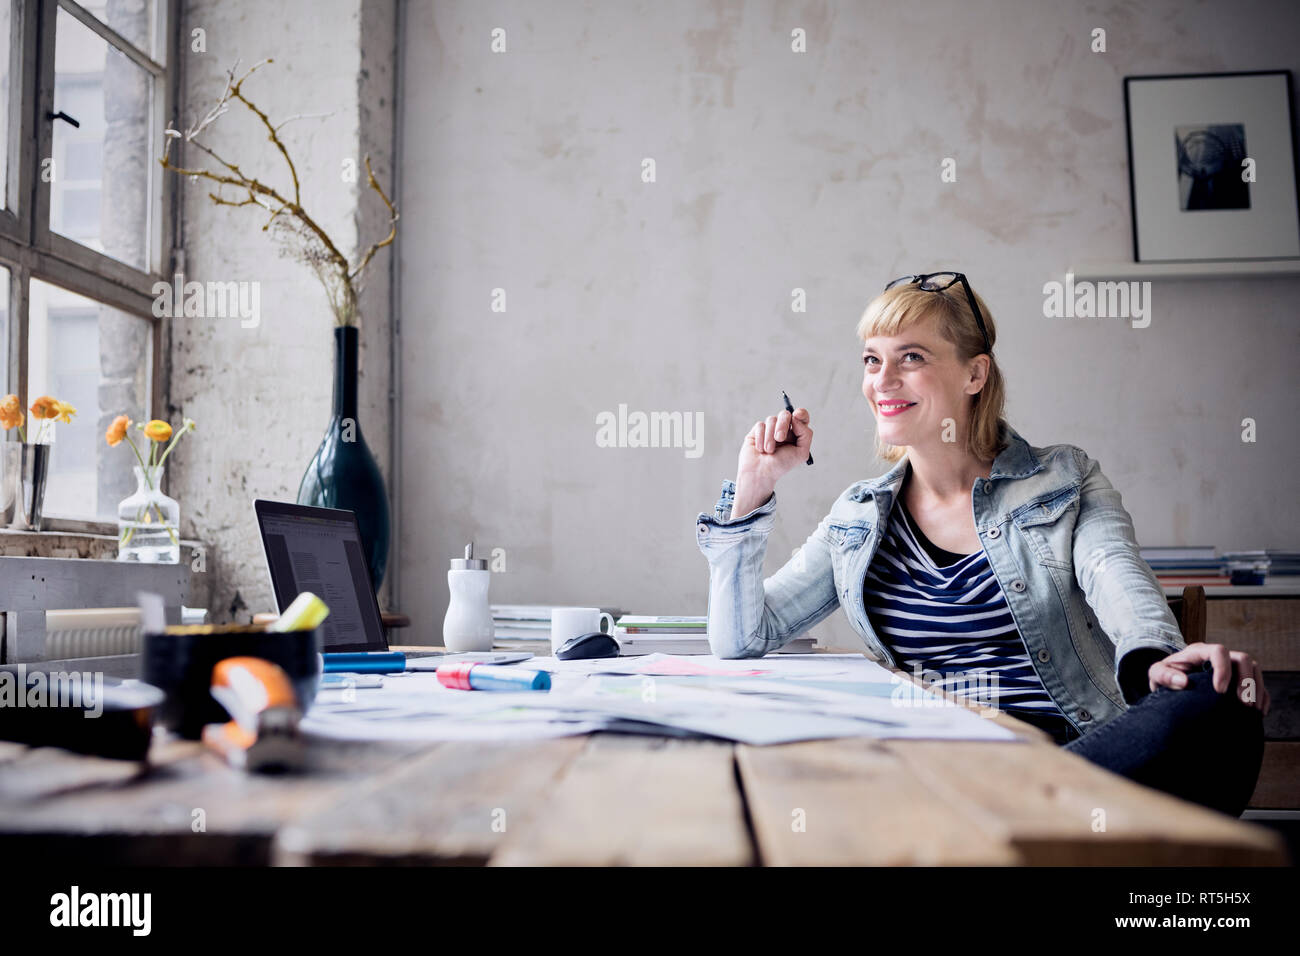 Portrait of laughing woman sitting at desk dans un loft Banque D'Images